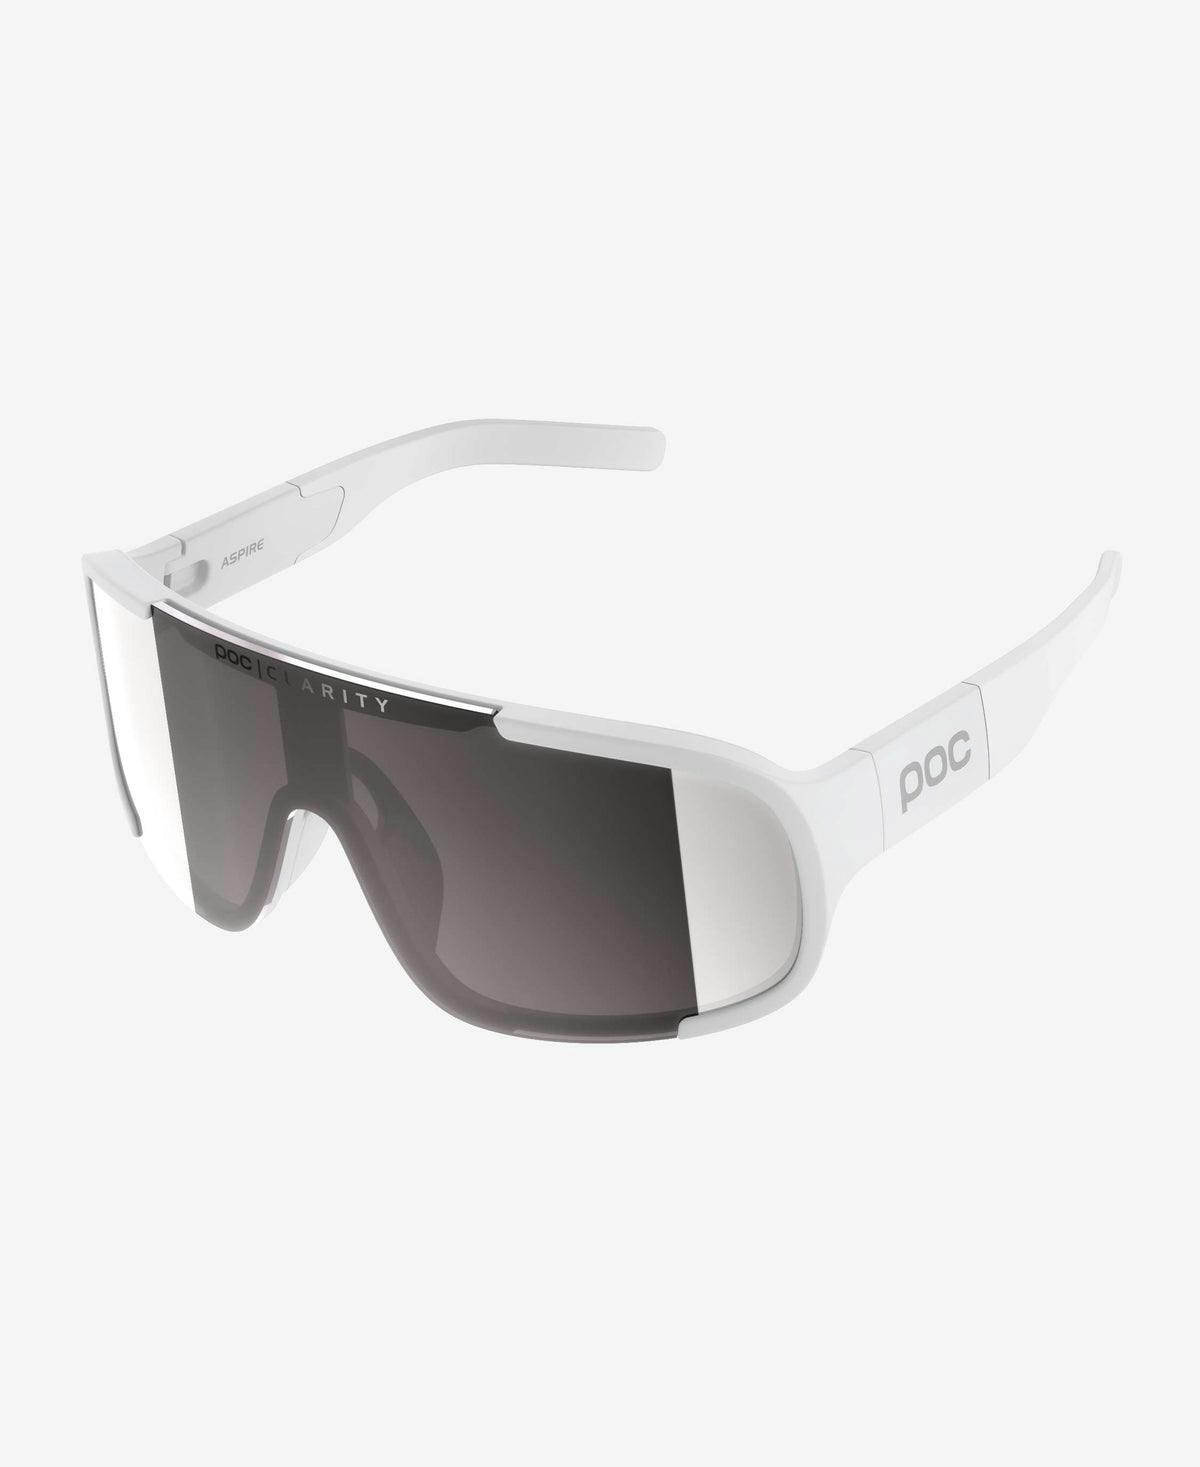 POC Aspire Sunglasses · Hydrogen White